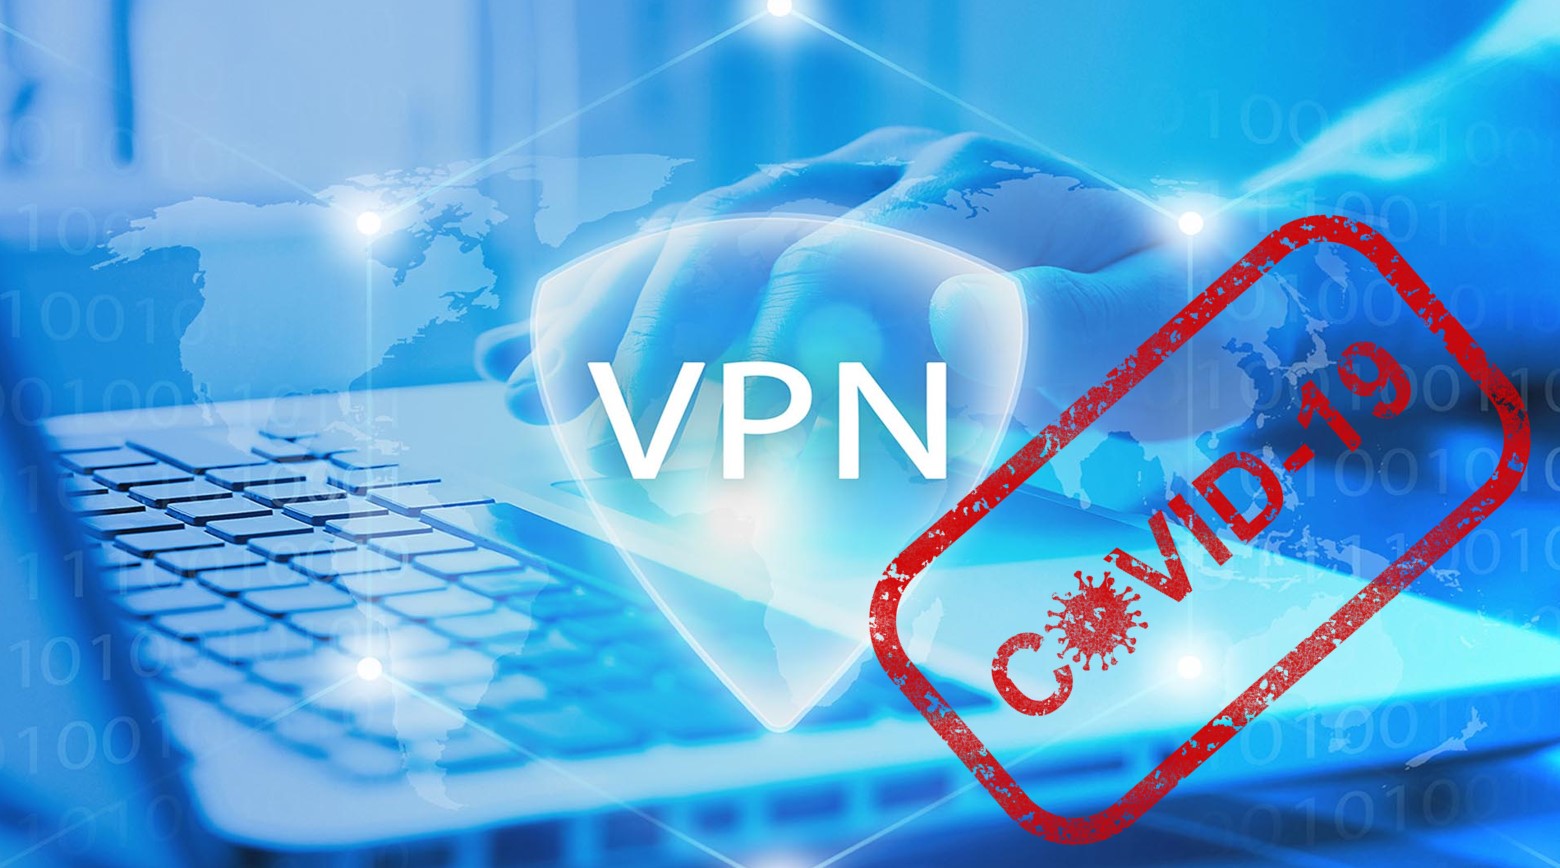 Управление и мониторинг VPN в условиях массового ухода на удаленную работу в связи с COVID